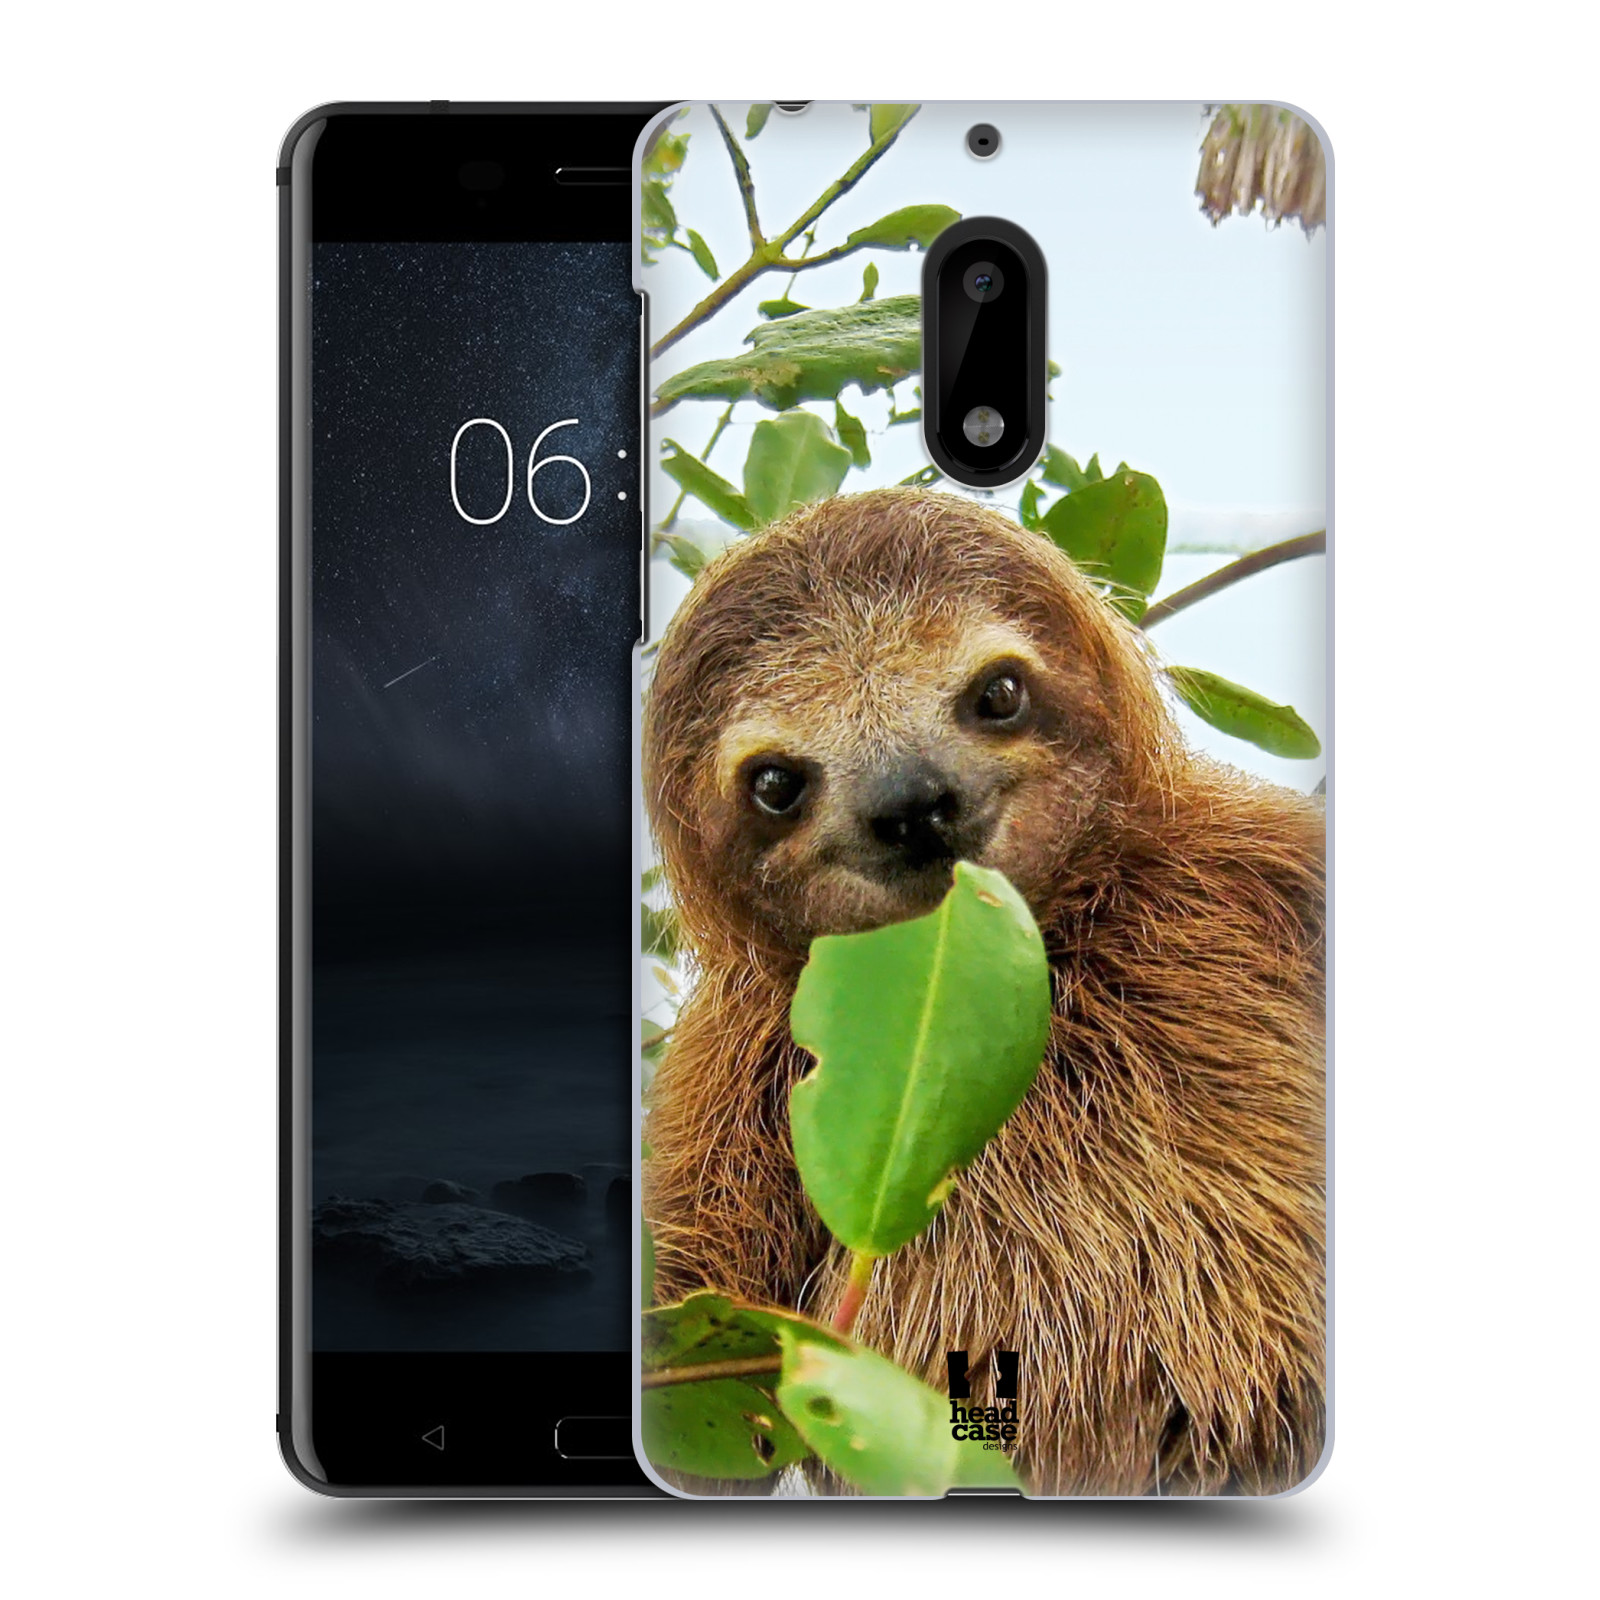 HEAD CASE plastový obal na mobil Nokia 6 vzor slavná zvířata foto lenochod